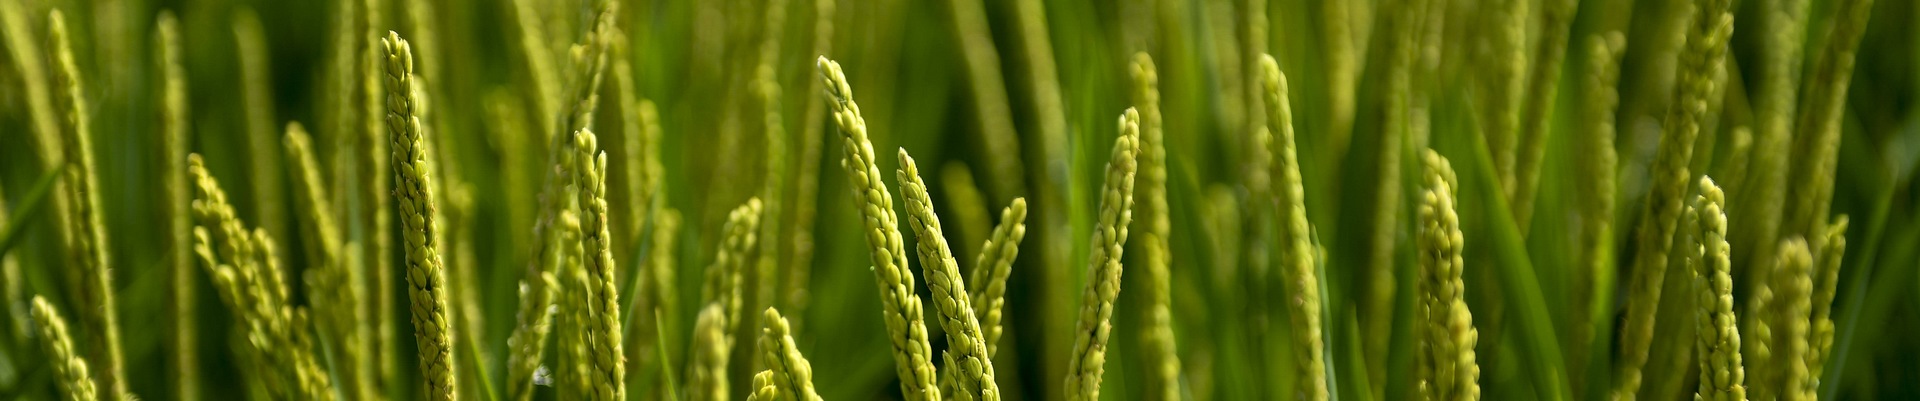 小麦水稻农业耕种.jpg